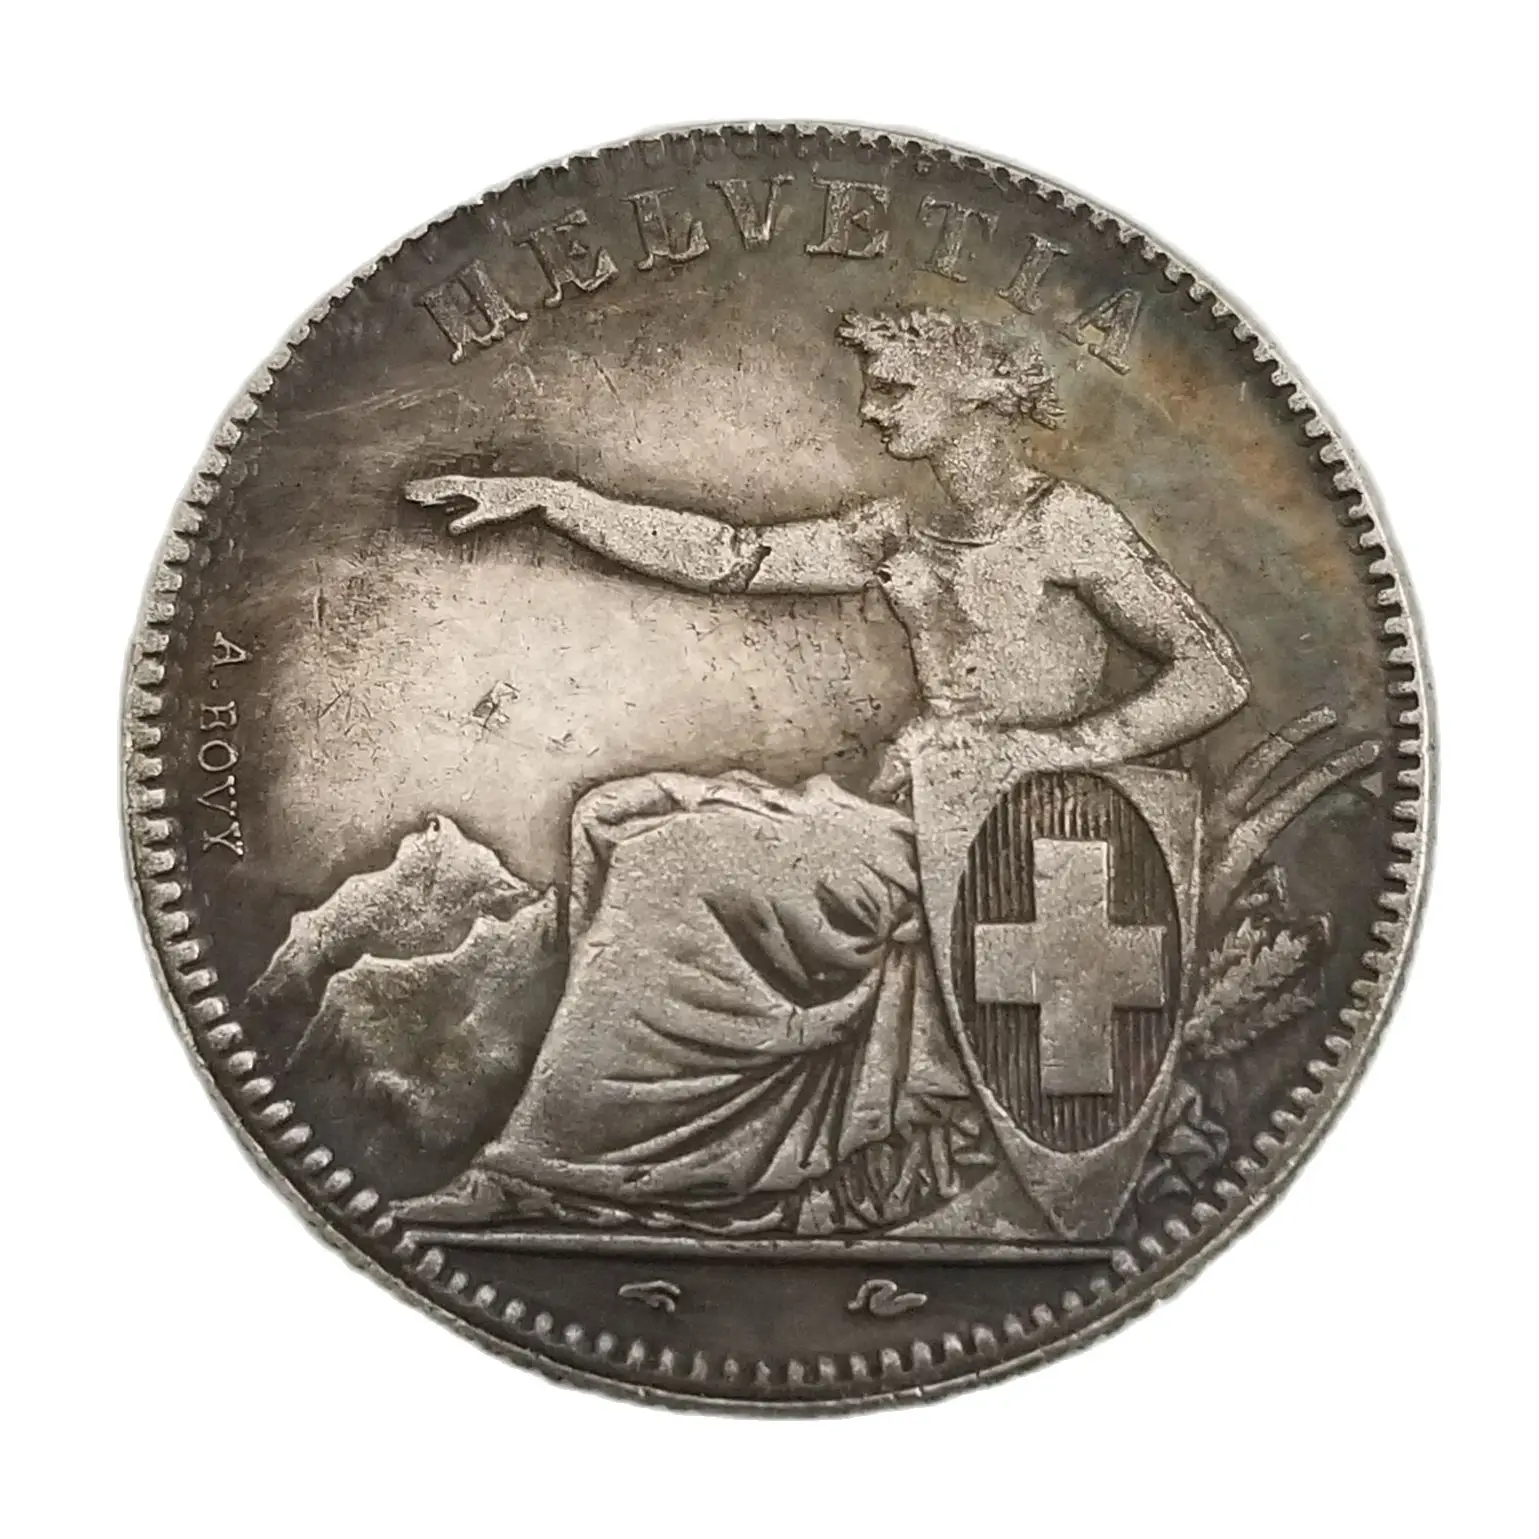 

1850 2Fr. Швейцарские посеребренные монеты, домашний декор, монеты, волшебные предметы на удачу, копия монет, монеты, рождественские подарки